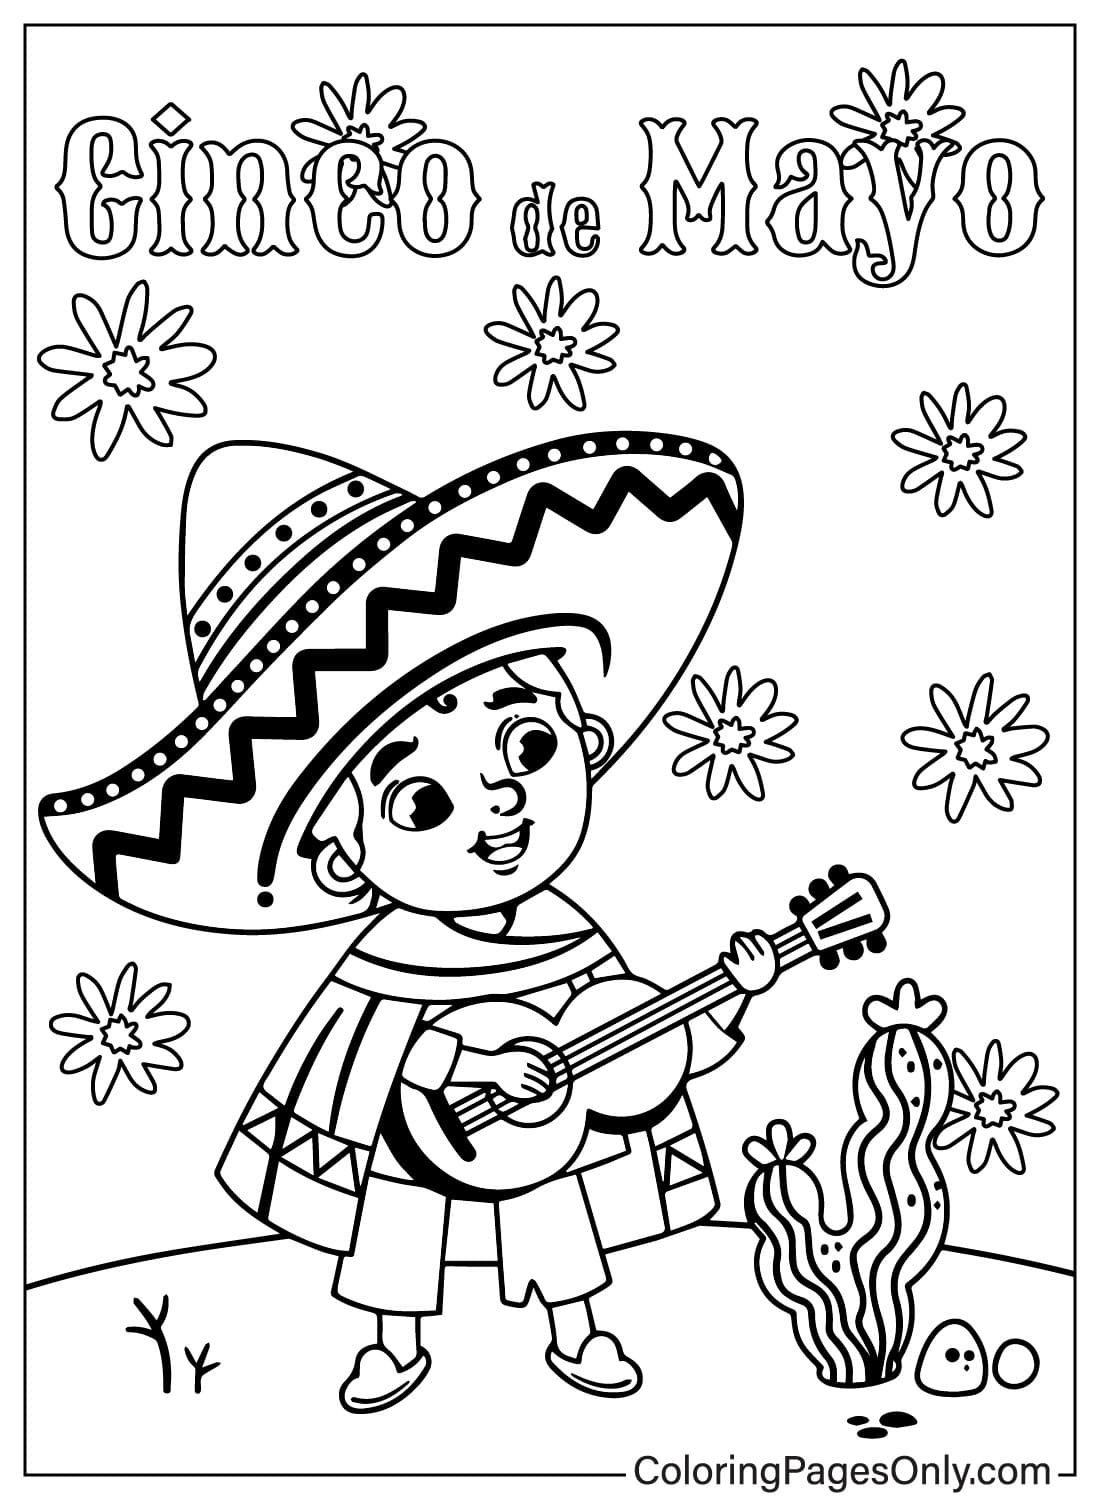 Un dibujo animado de un niño mexicano tocando una guitarra del Cinco de Mayo